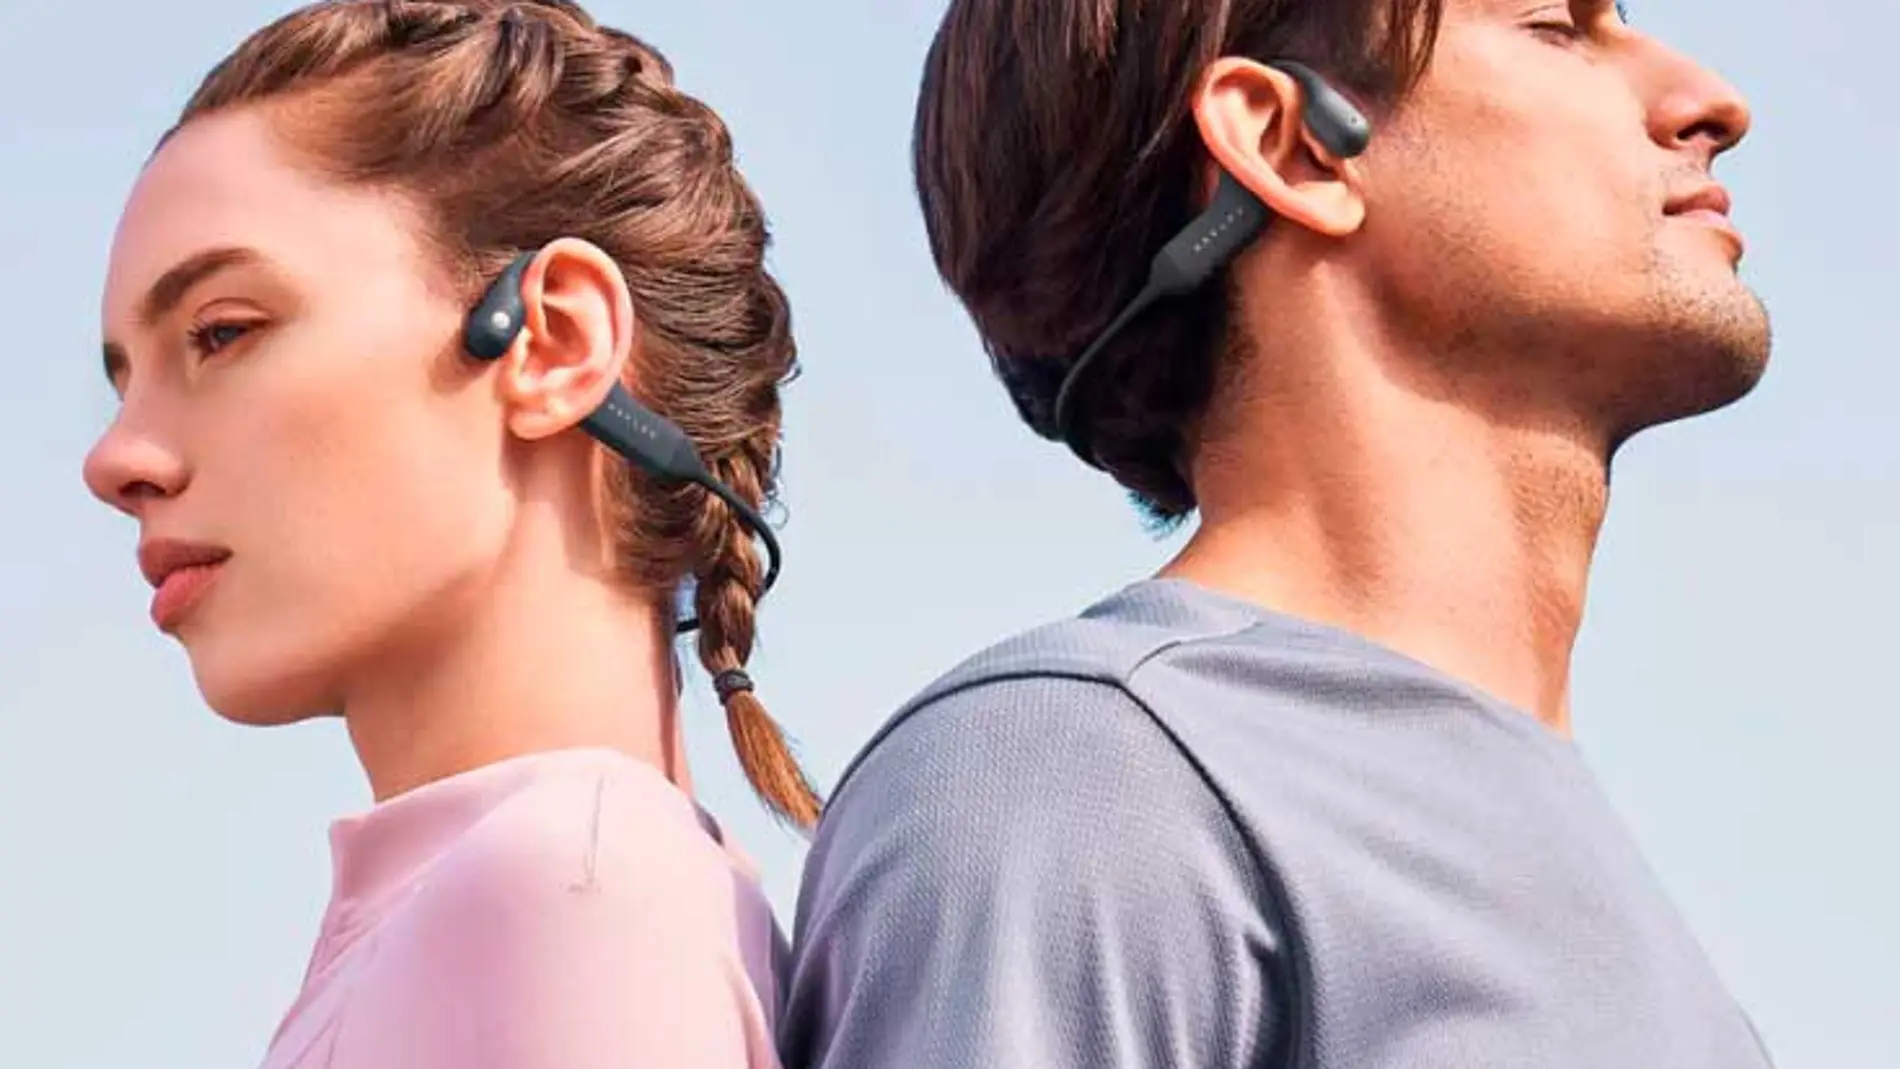 Para los amantes del deporte aeróbico, lo ideal es usar auriculares abiertos, y aptos para cualquier deporte. Para esto, el modelo de Pure Free de la marca Haylou, son únicos